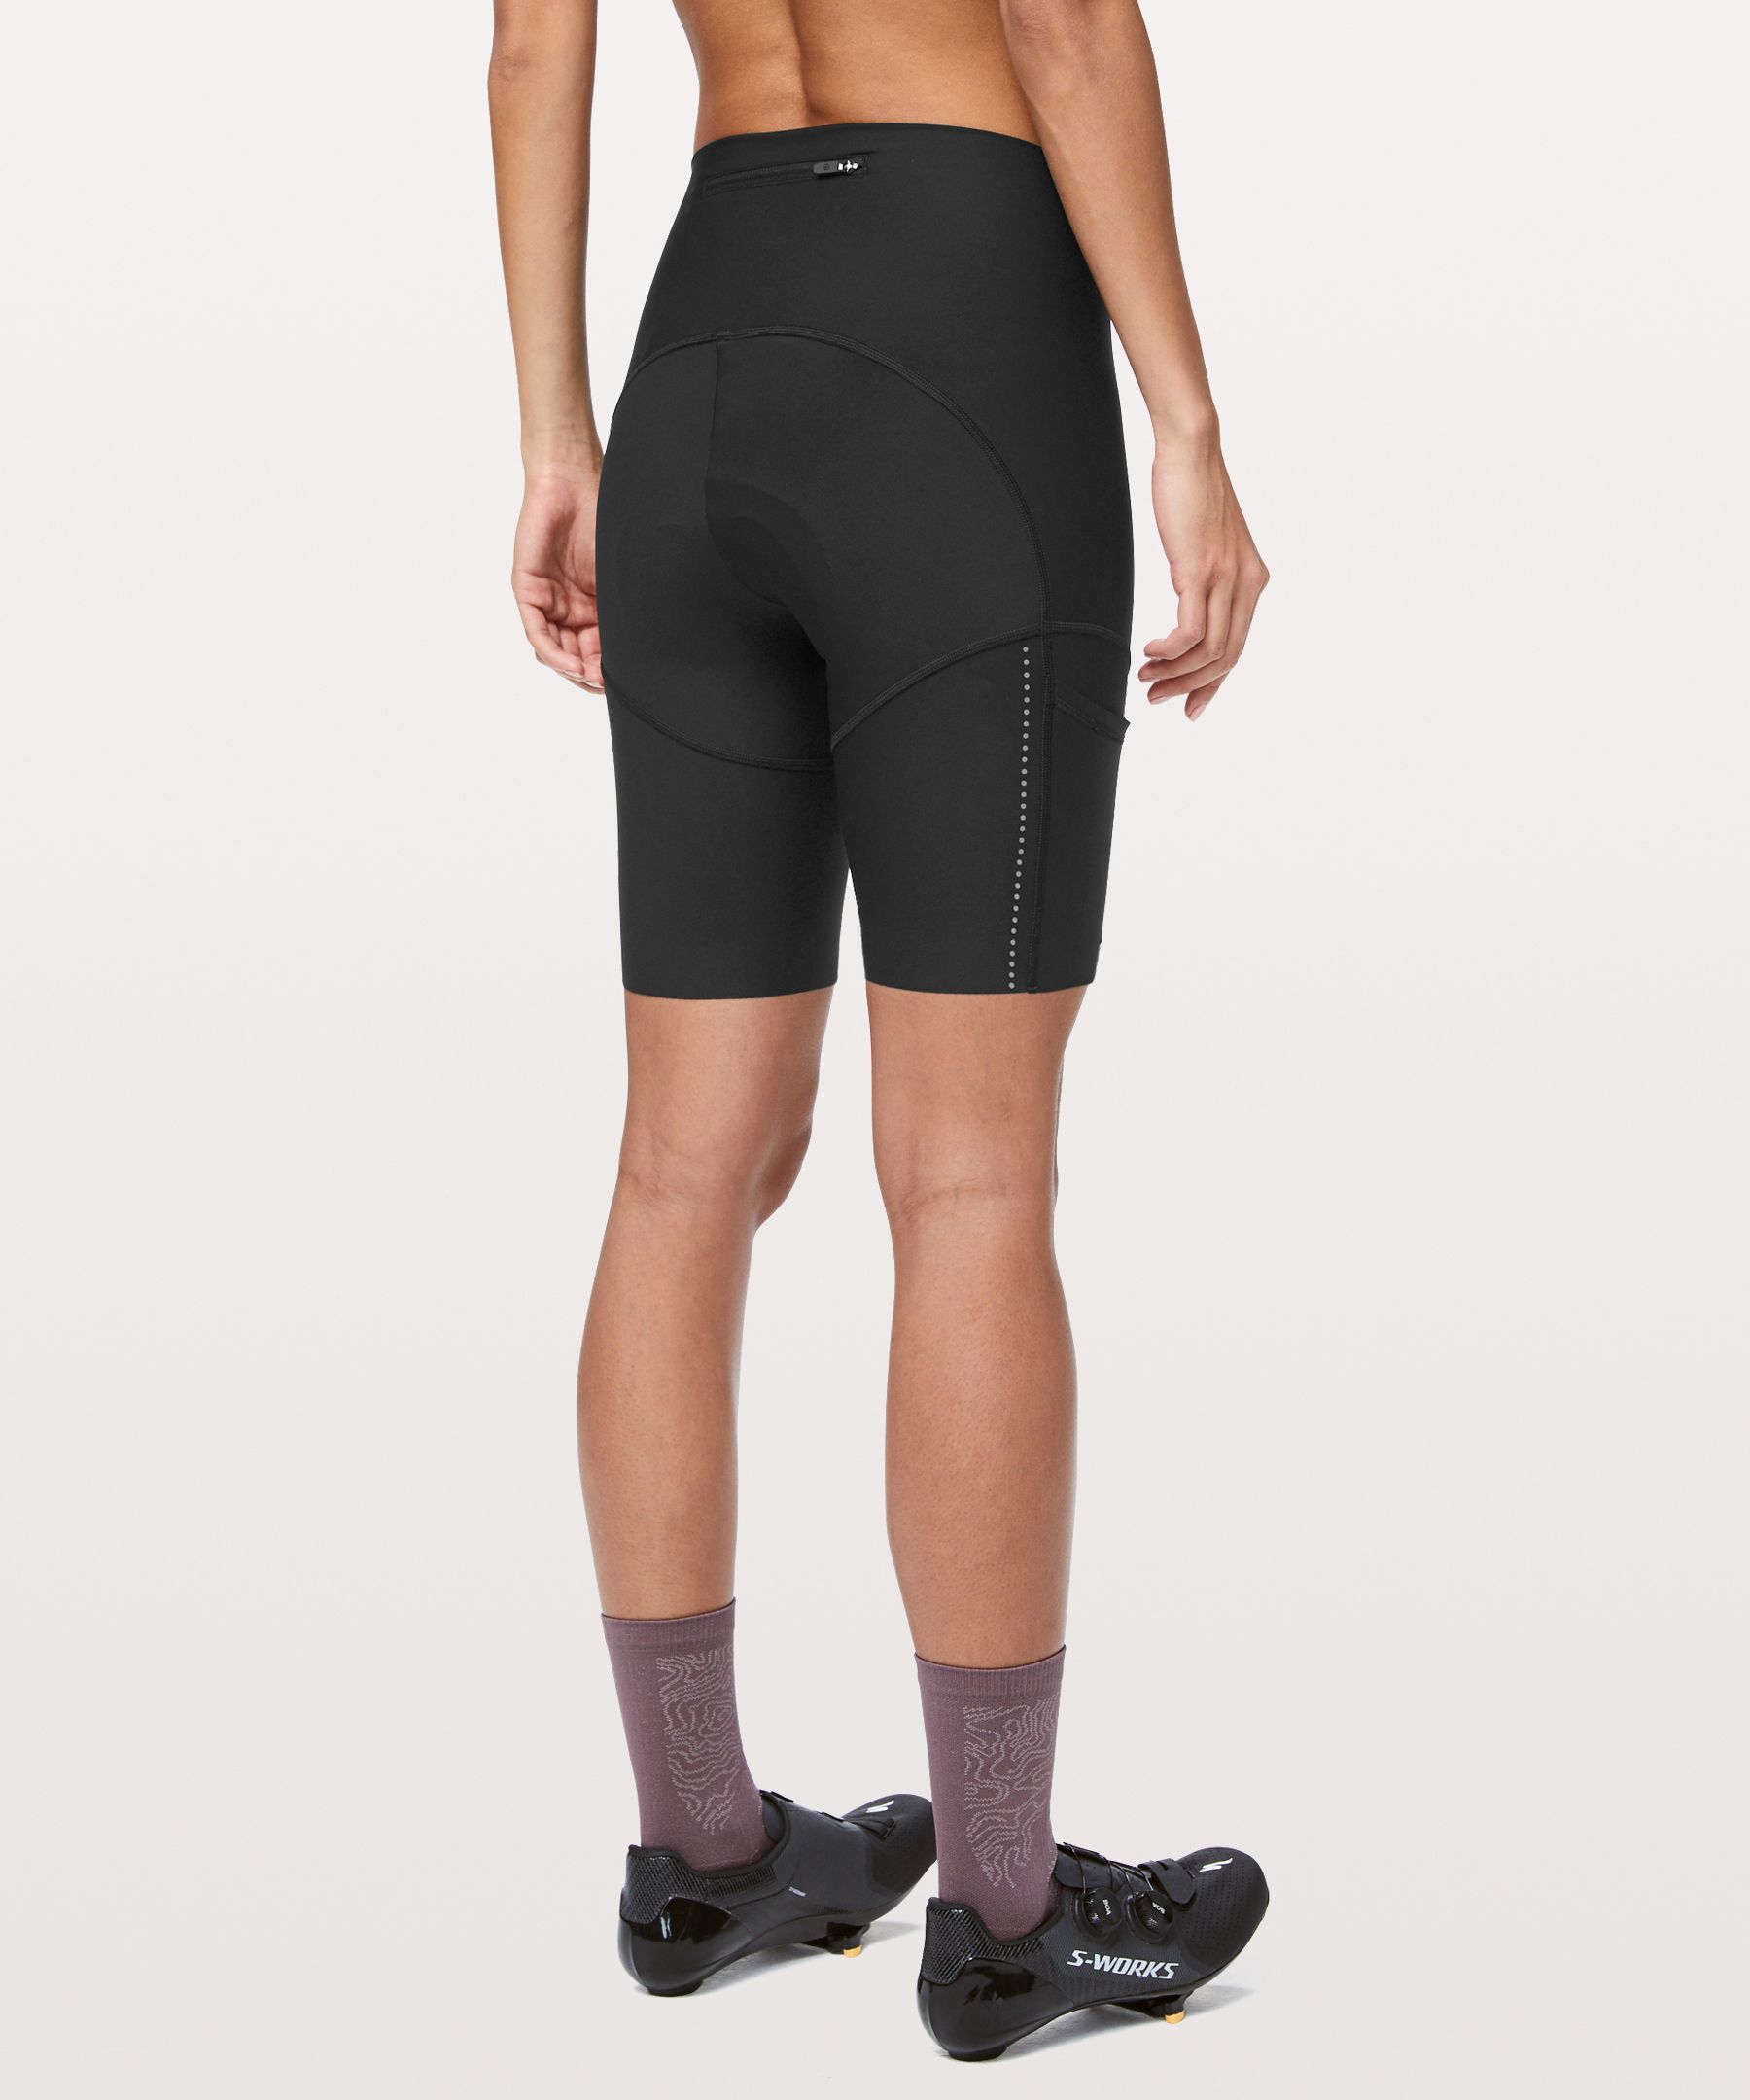 lulu bike shorts